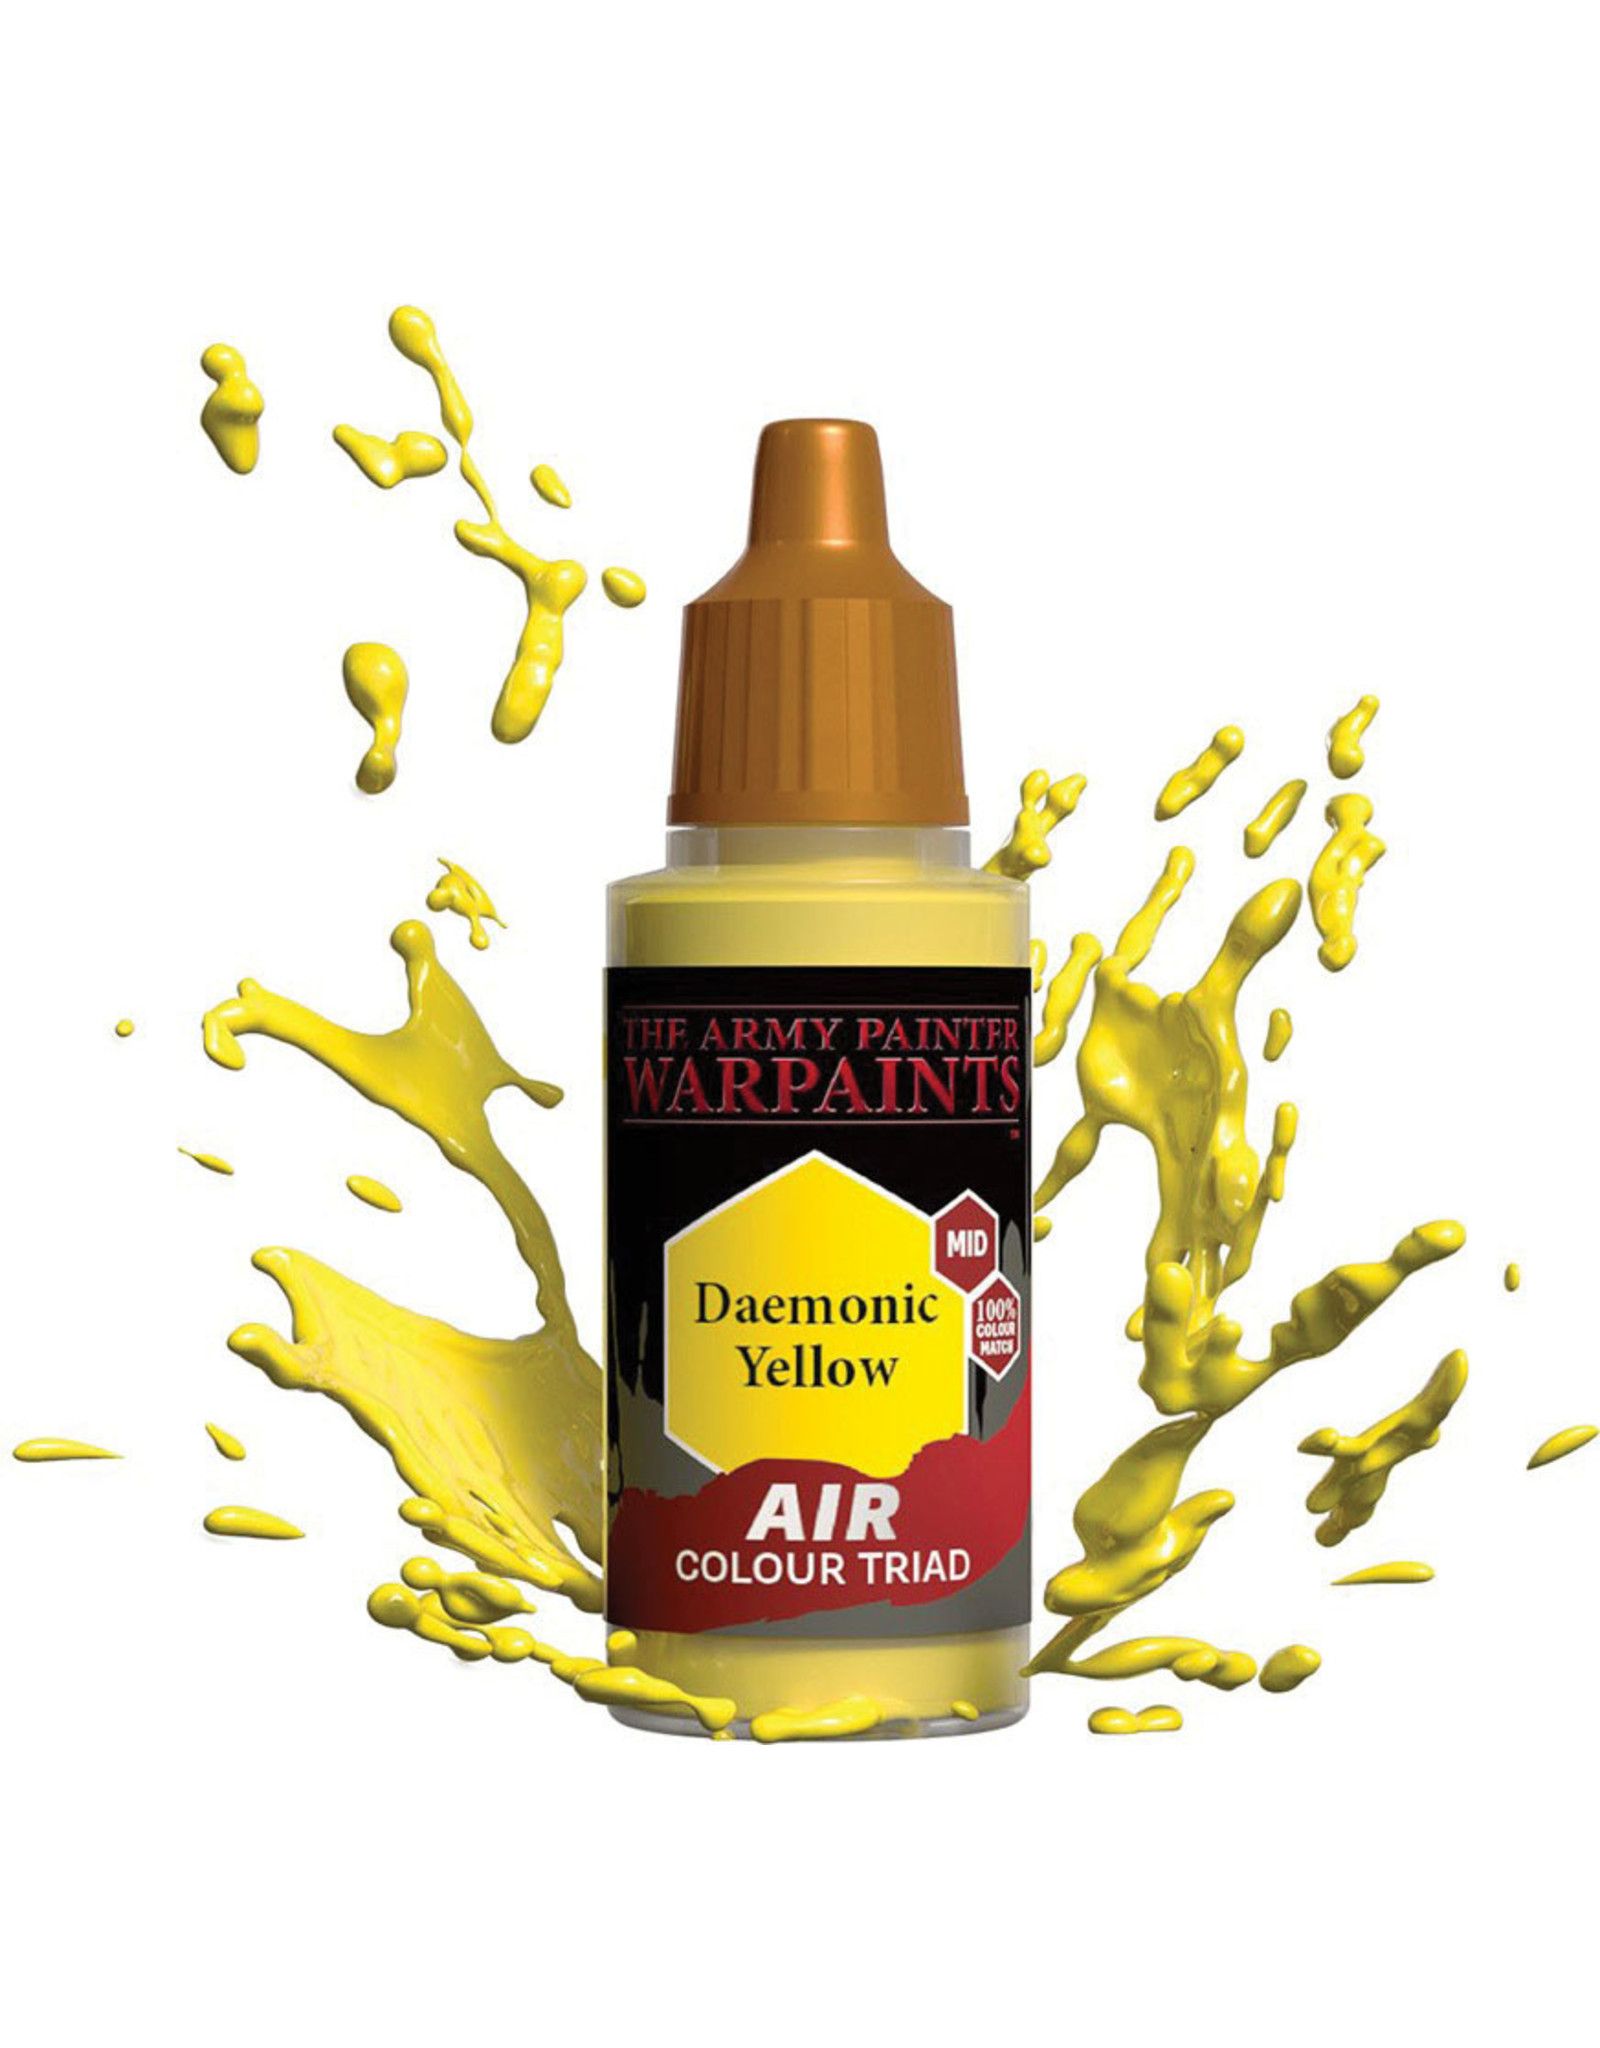 Army Painter Warpaint Air: Daemonic Yellow, 18ml.